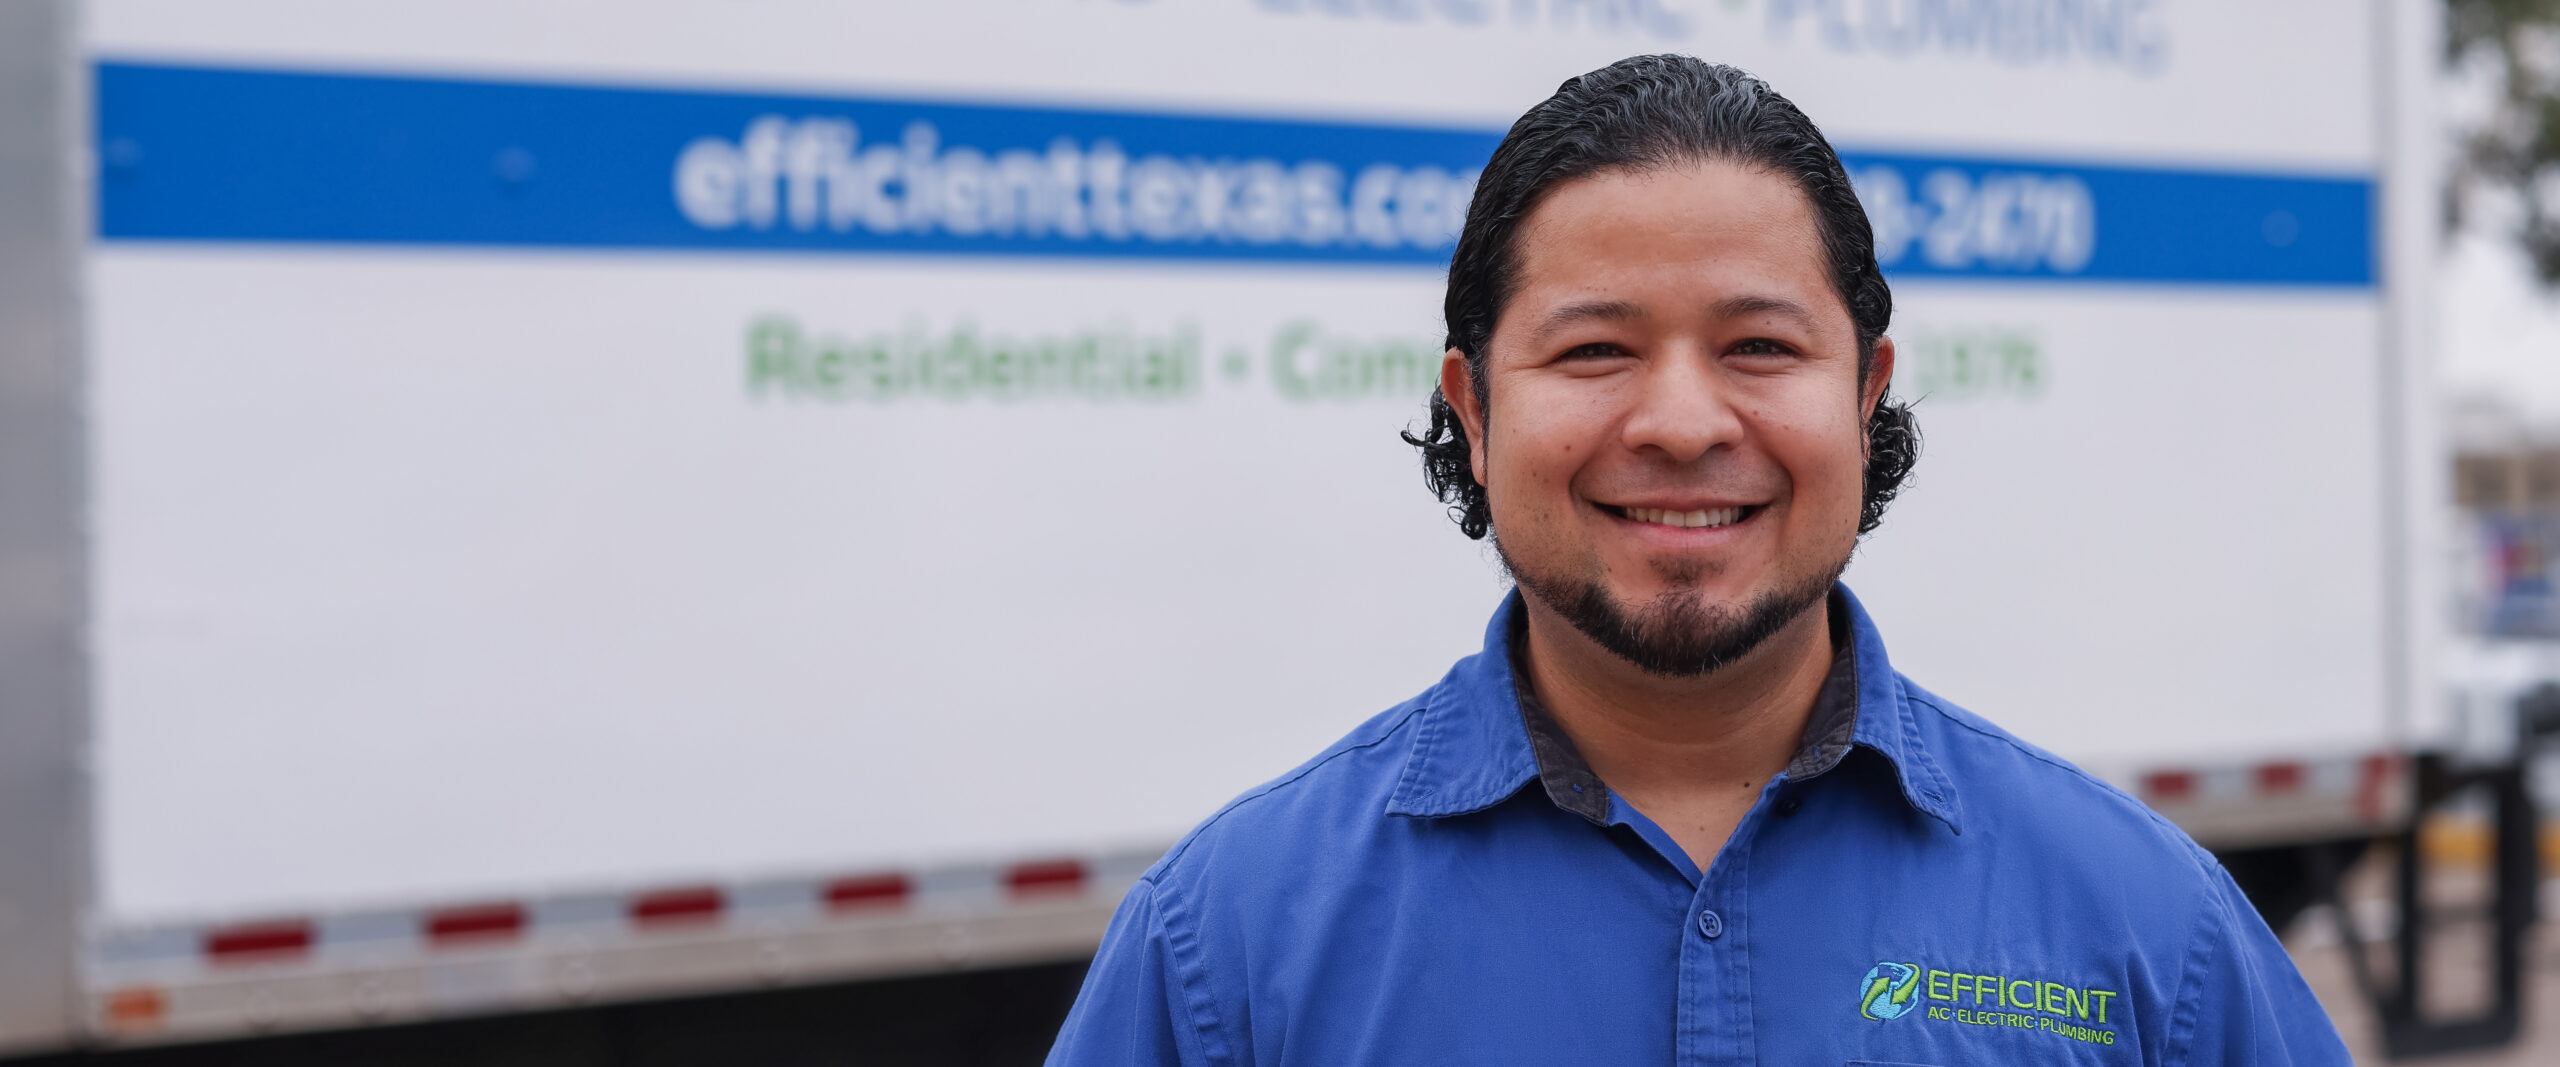 高效交流电 & plumbing 世界杯足彩app下载 technician smiling in a blue work shirt standing in front of white work truck in austin tx